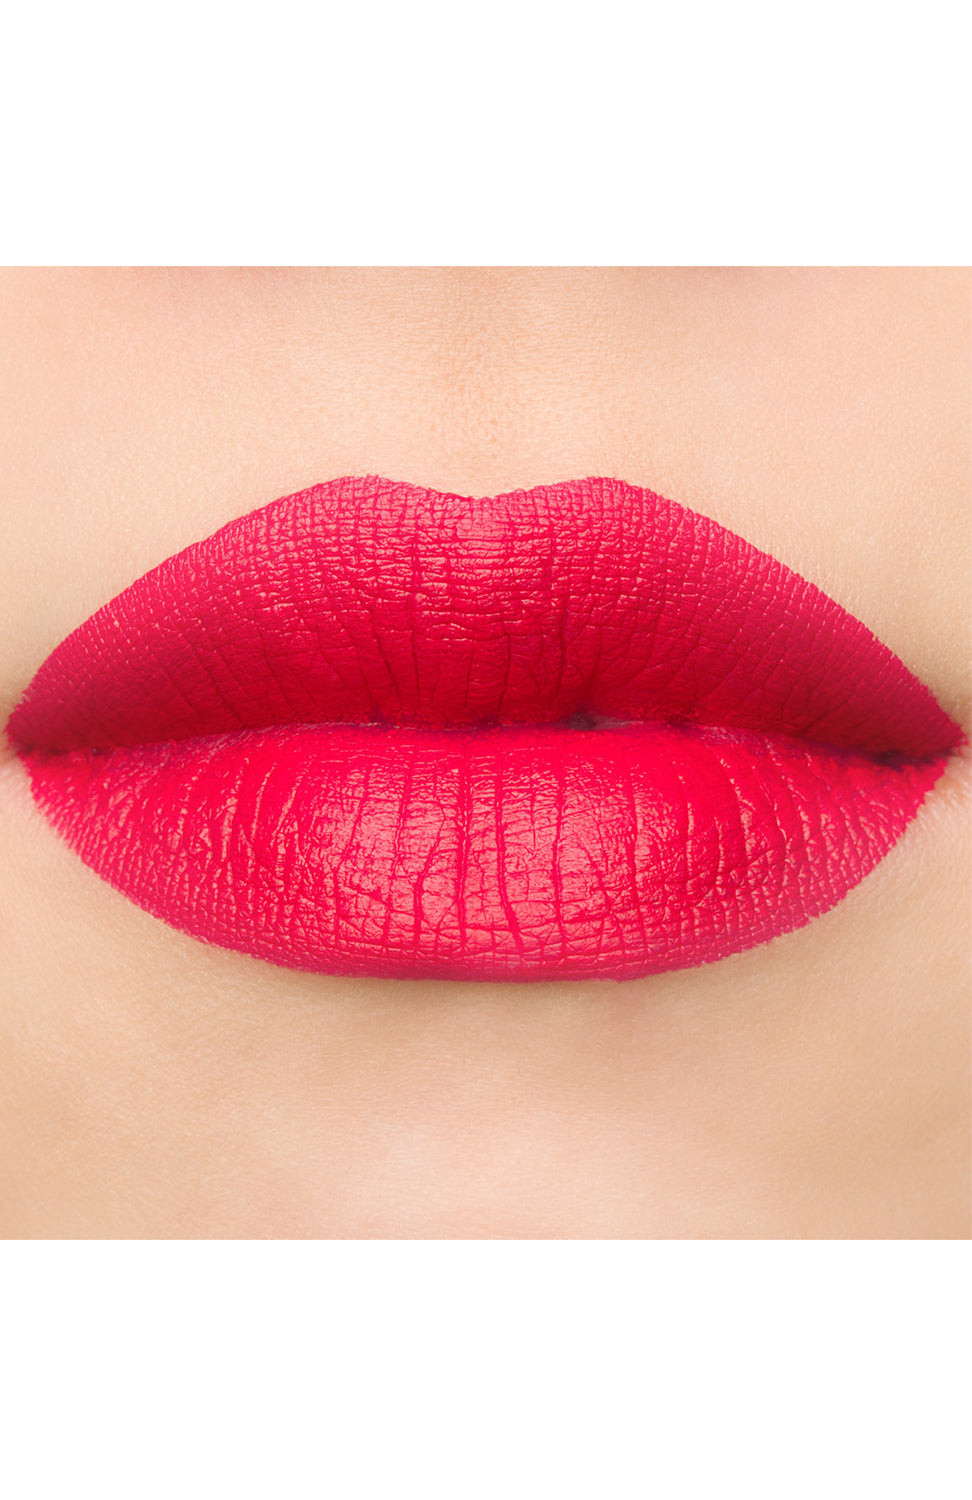 Jeffree Star Velour Liquid Lipstick-Cherry Wet Jotey